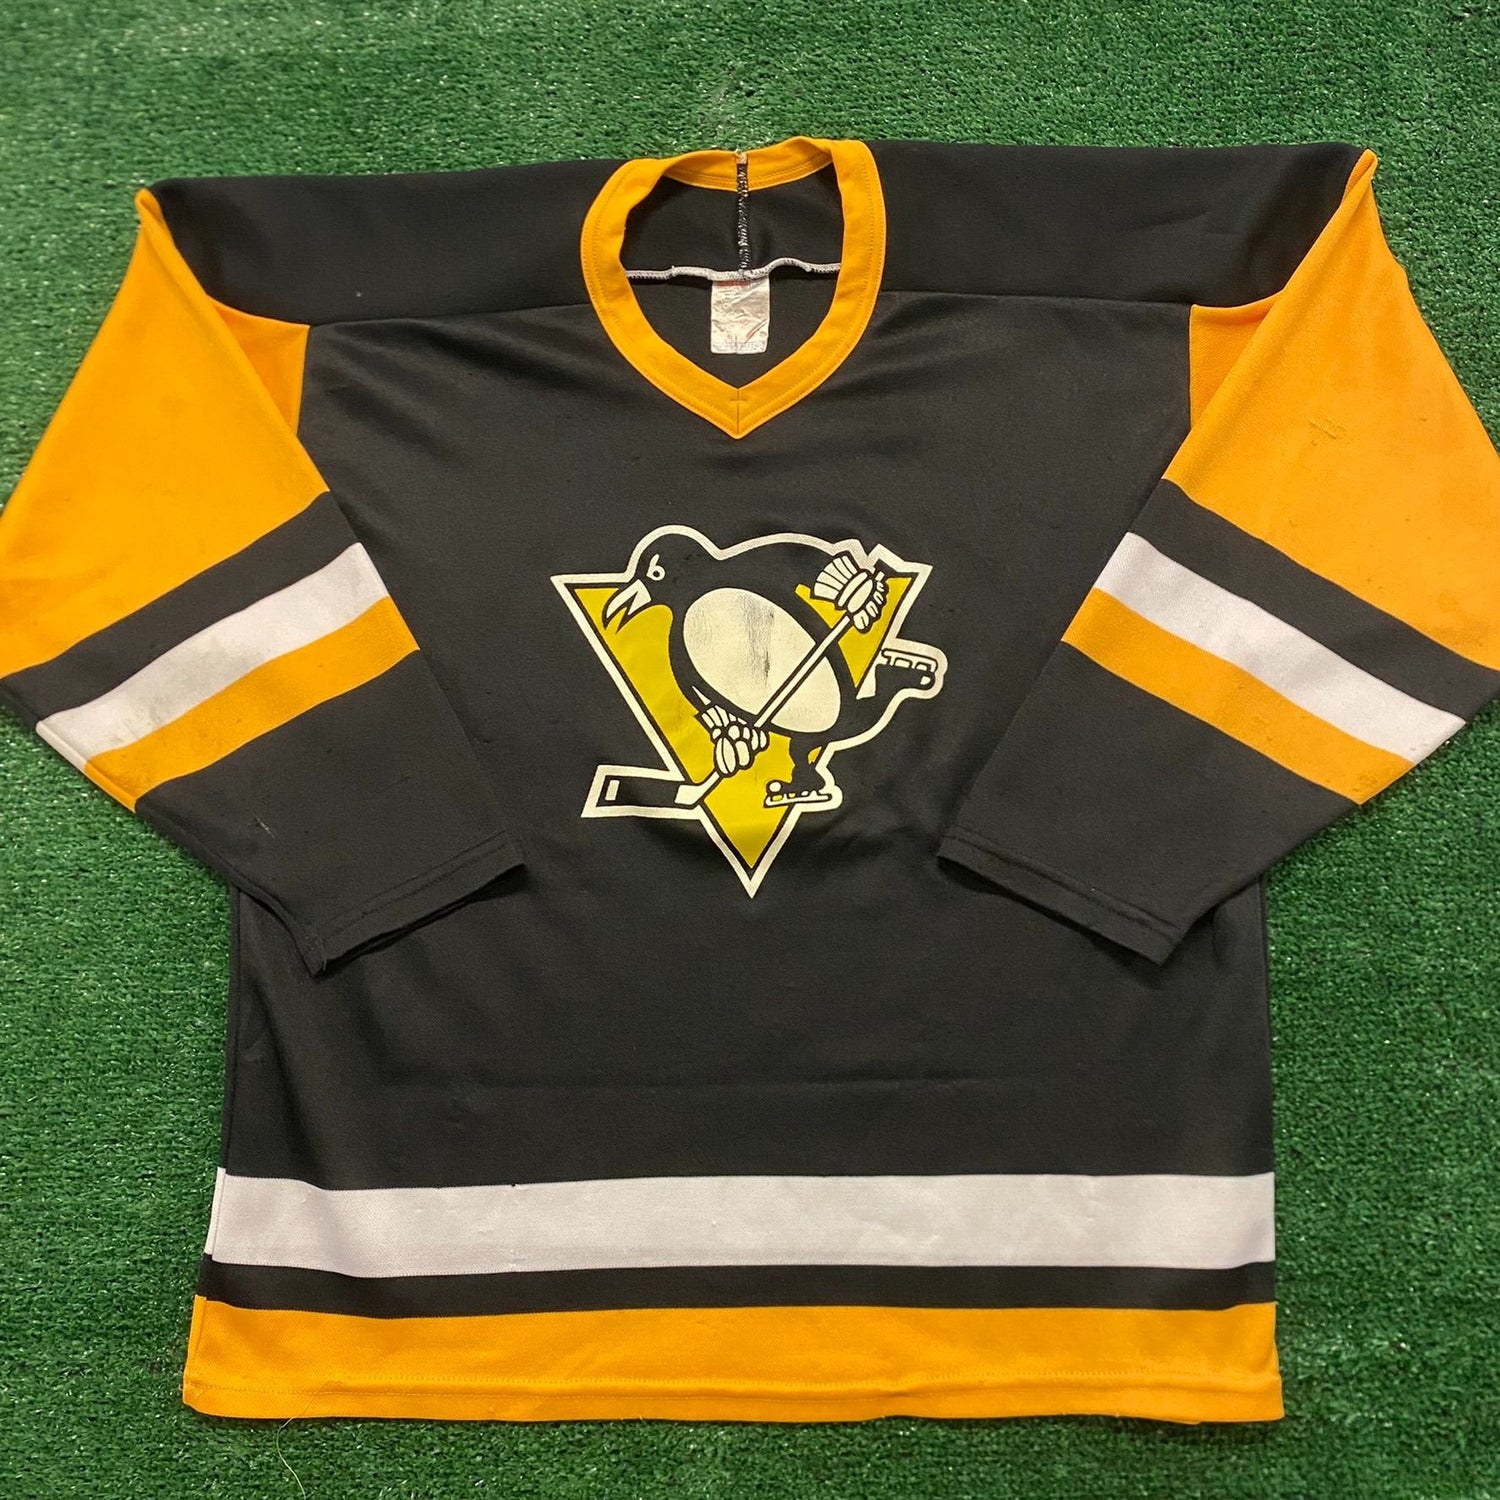 ccm penguins jersey